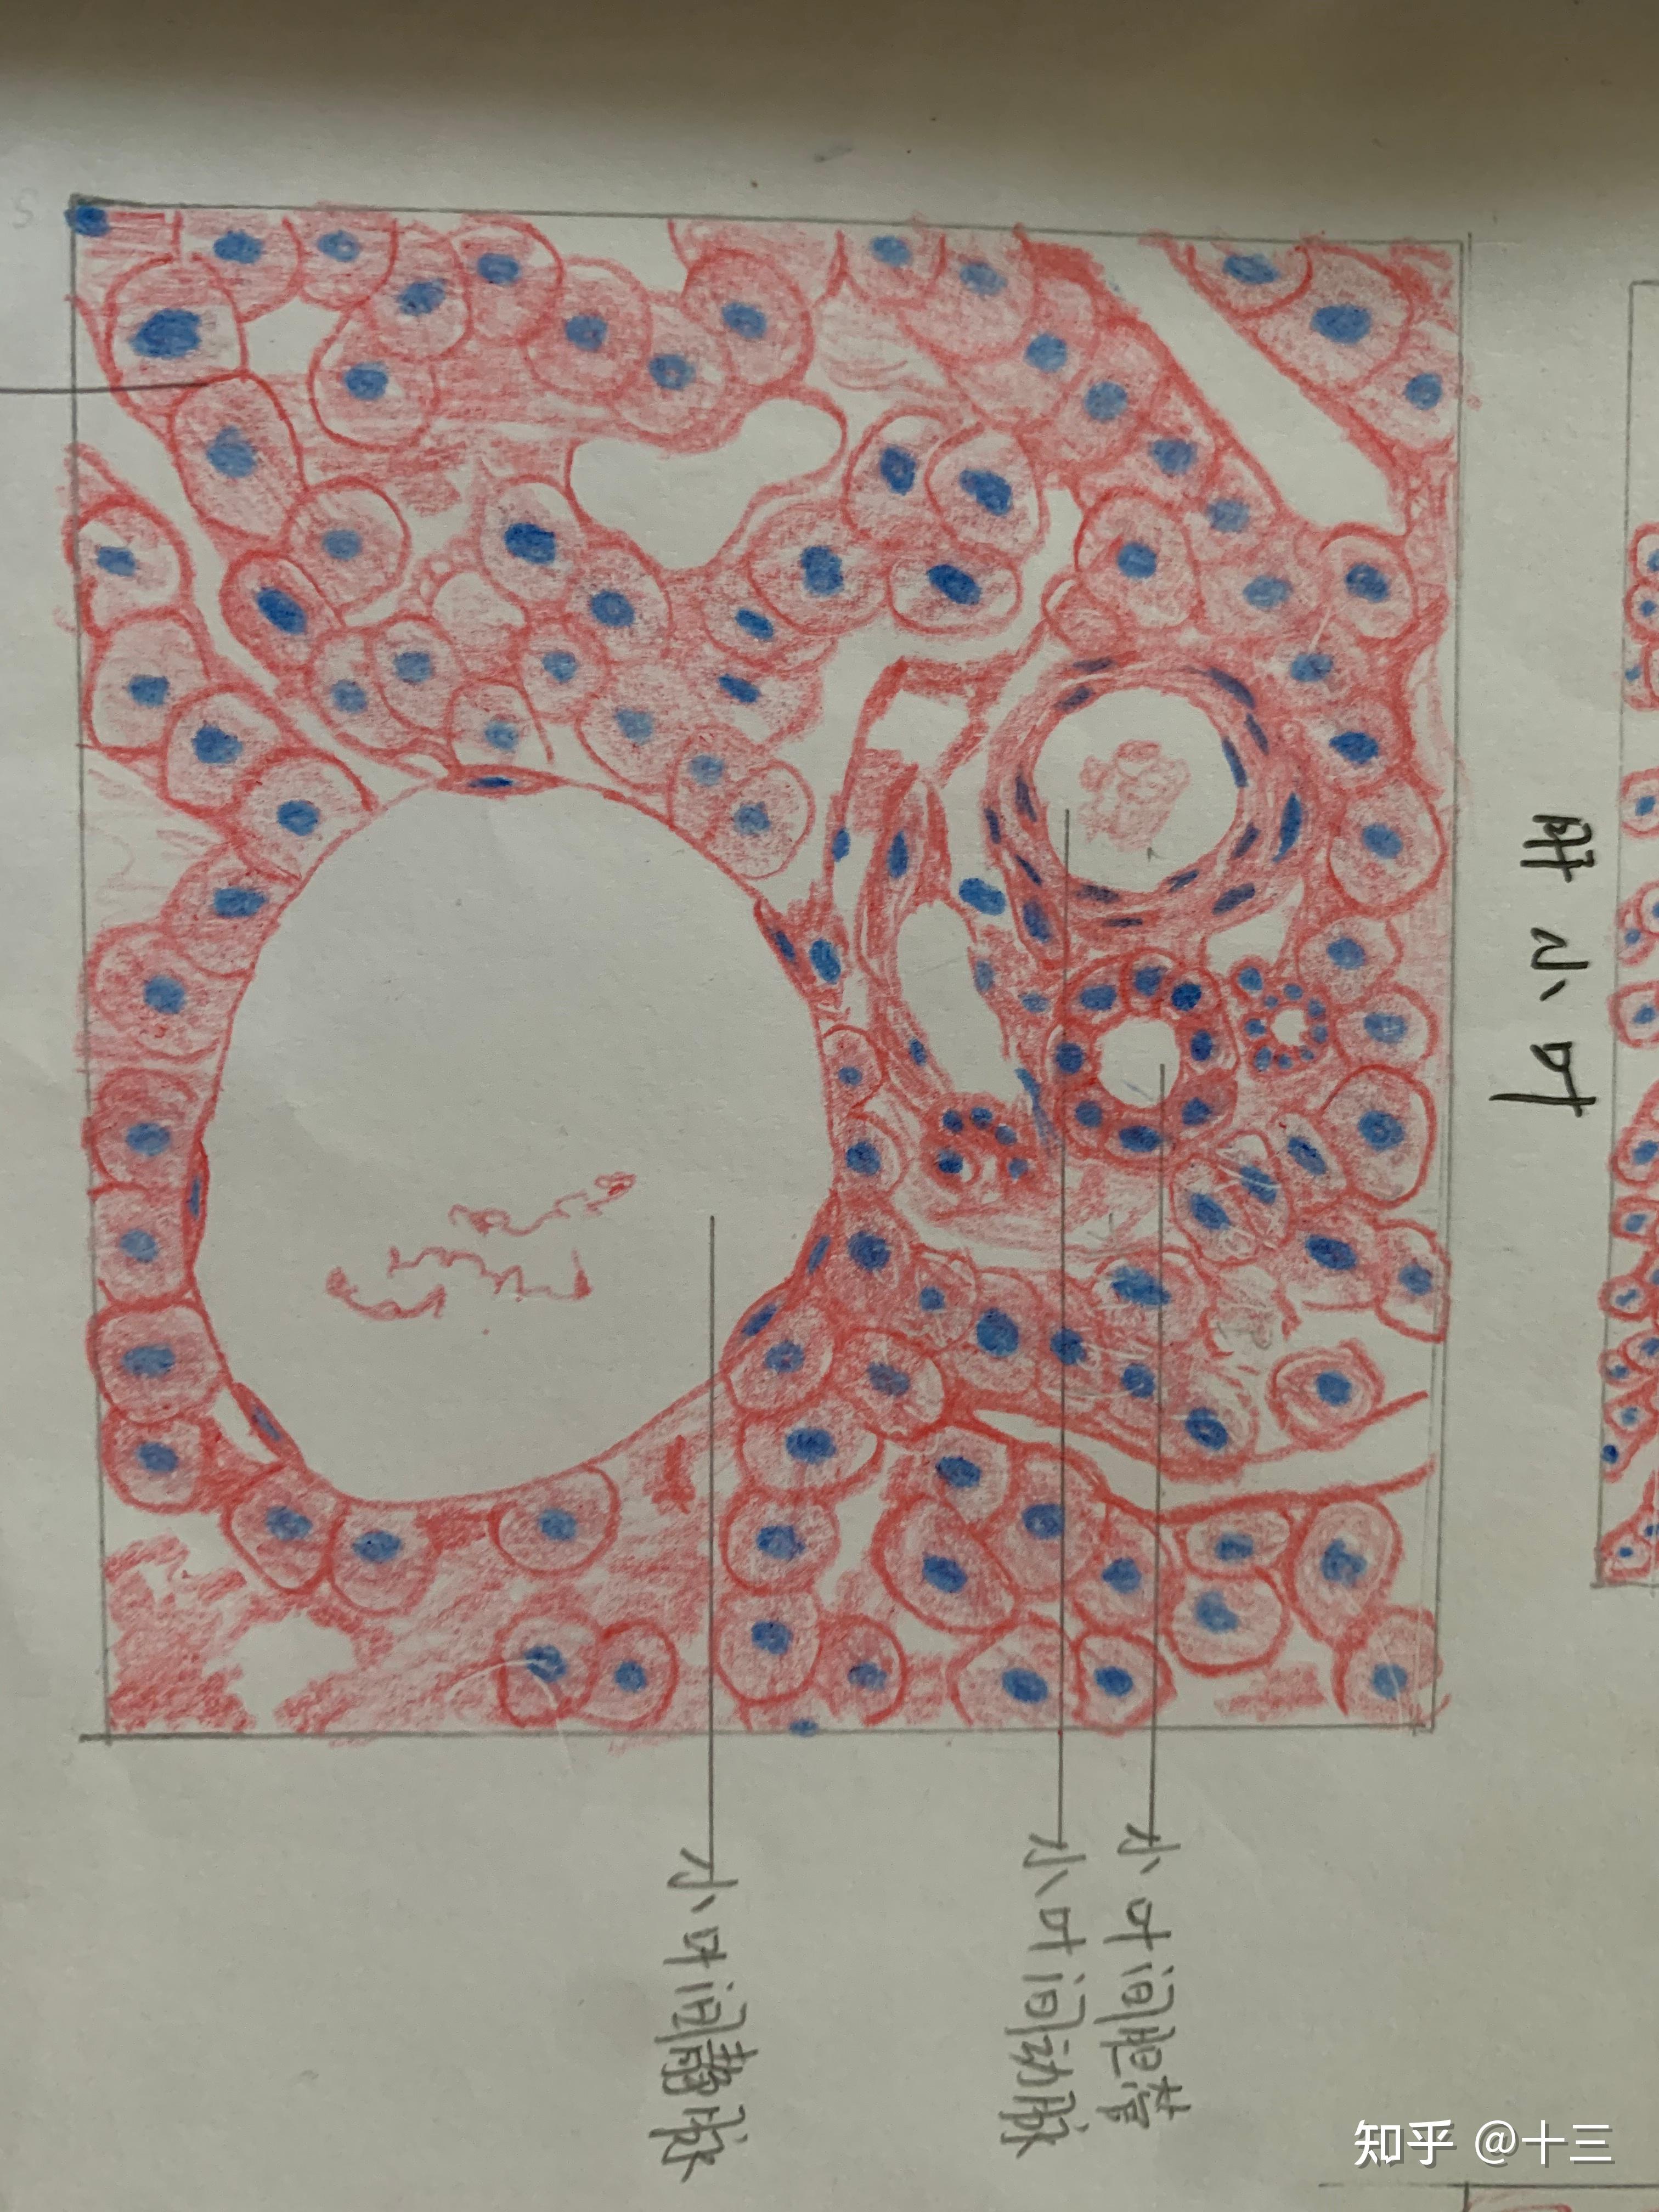 组胚实验红蓝铅笔手绘图 